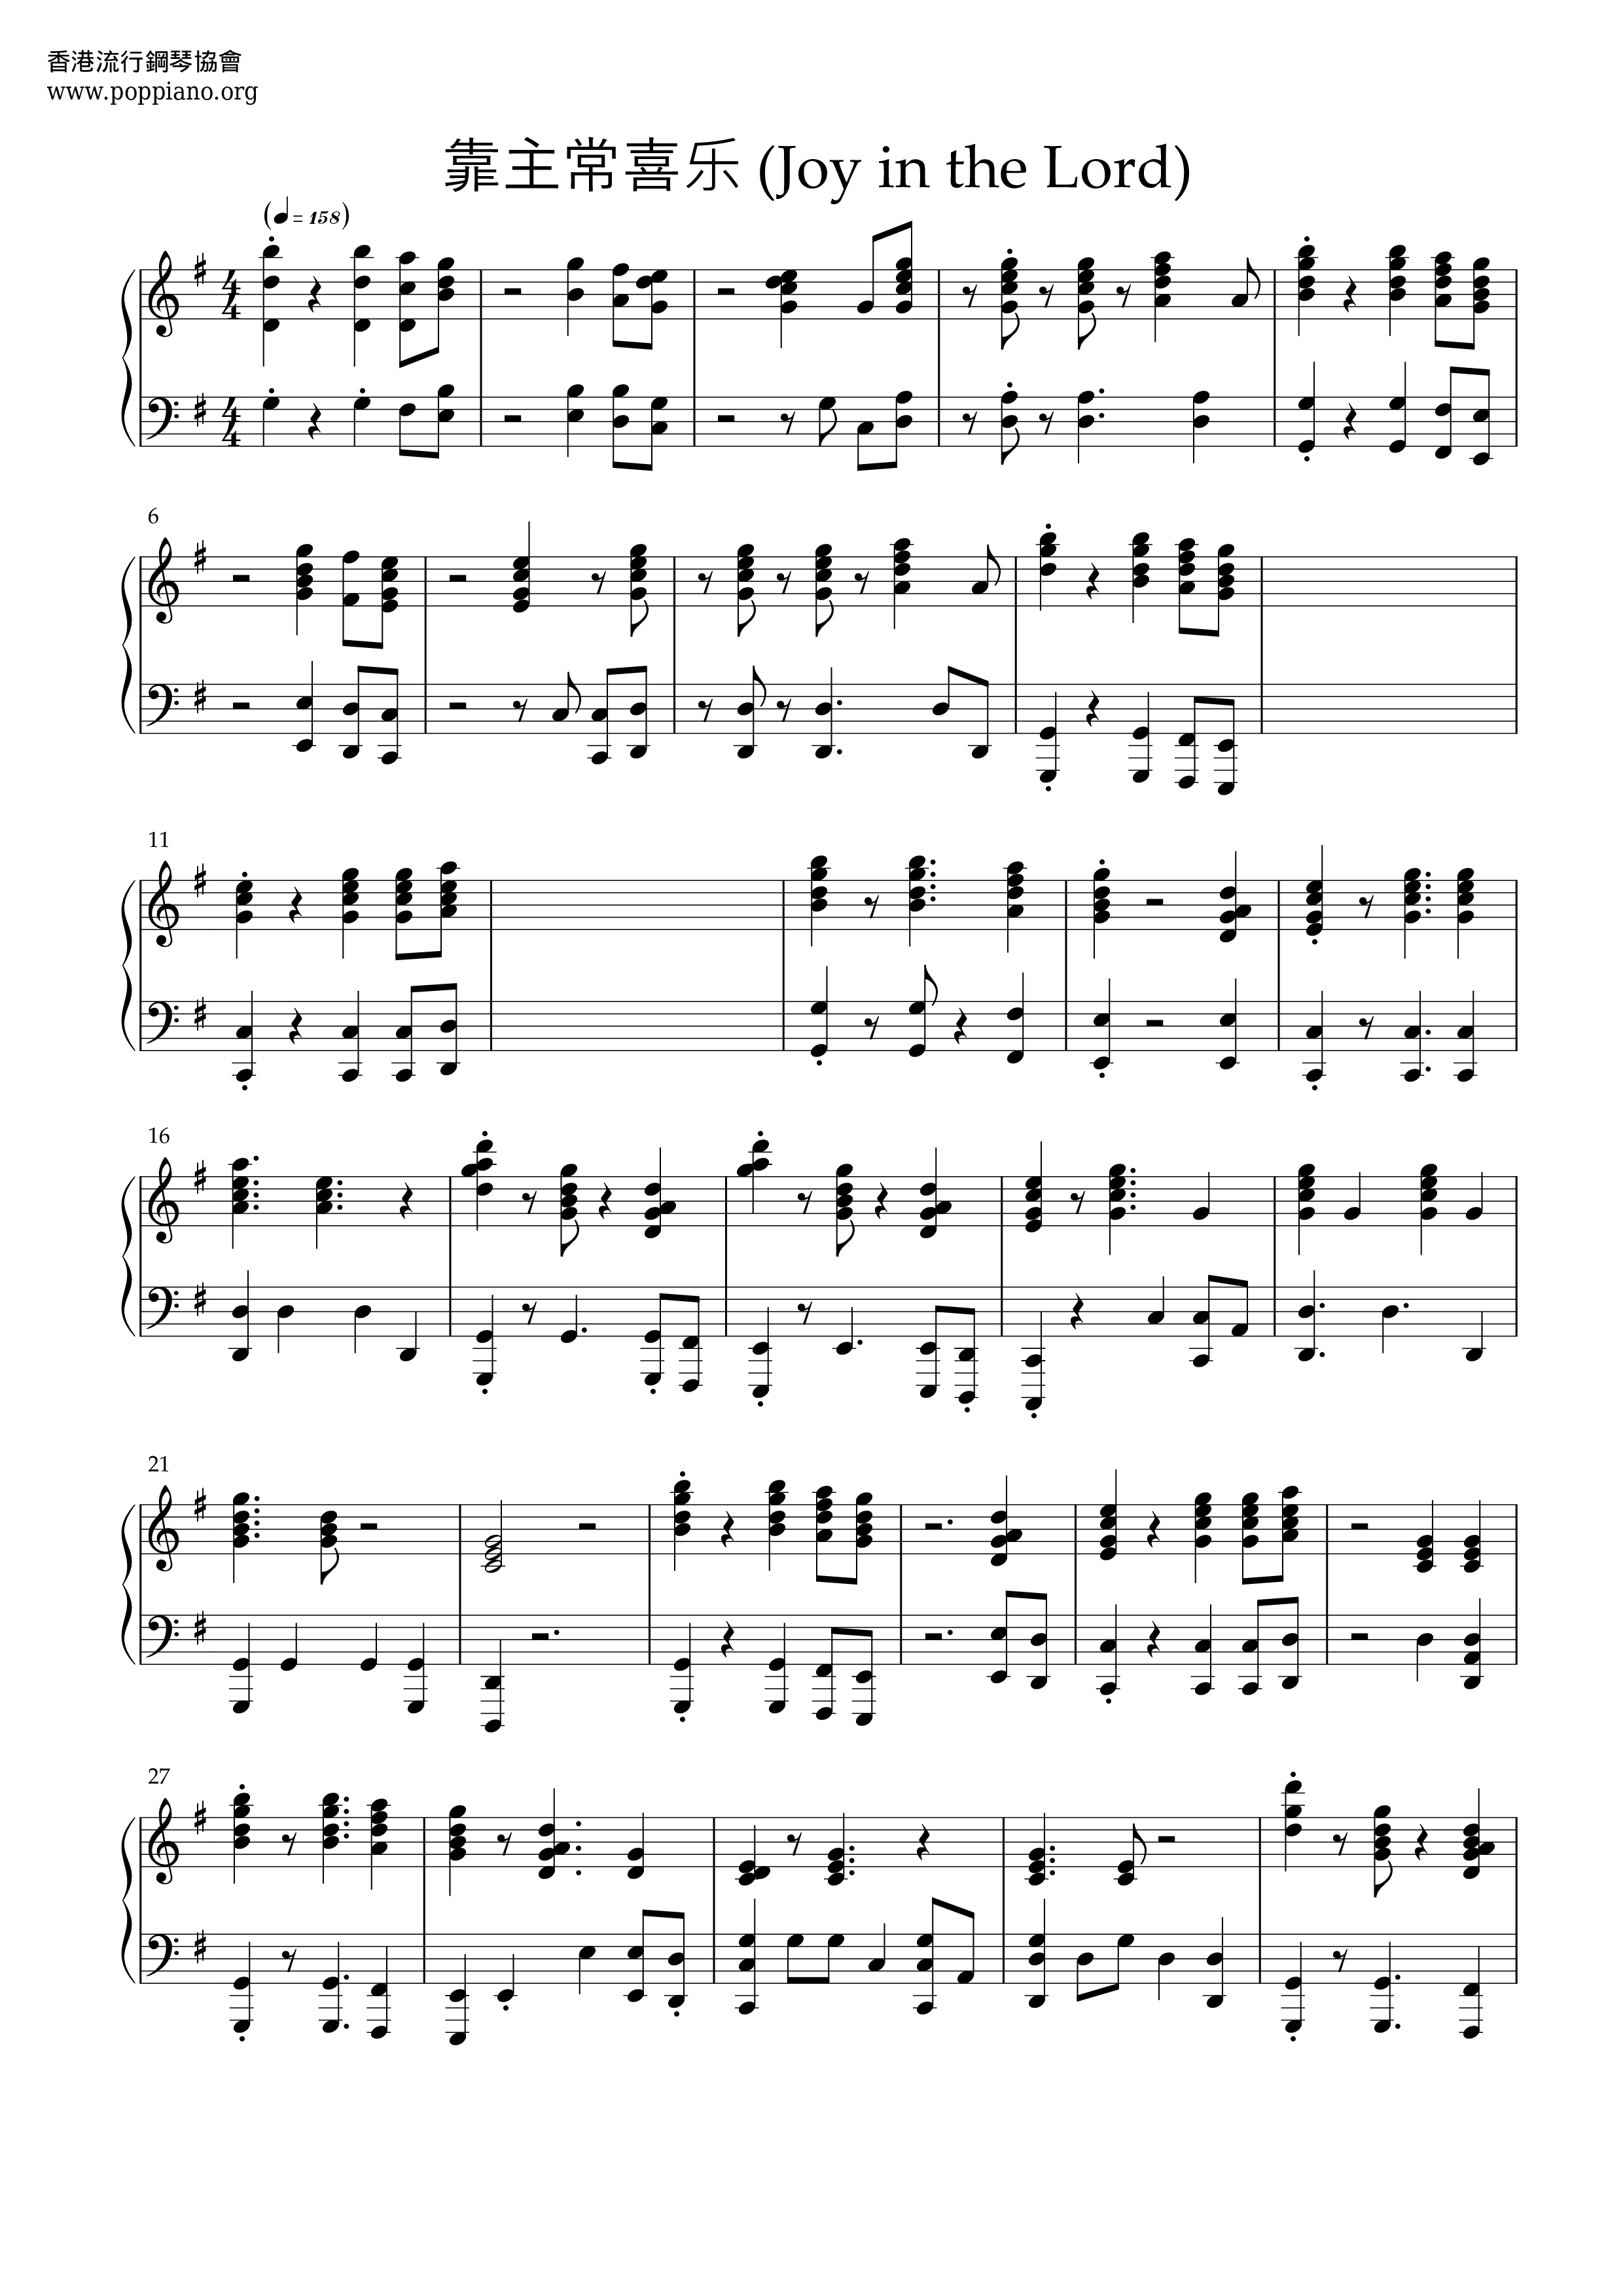 Joy In The Lord Score